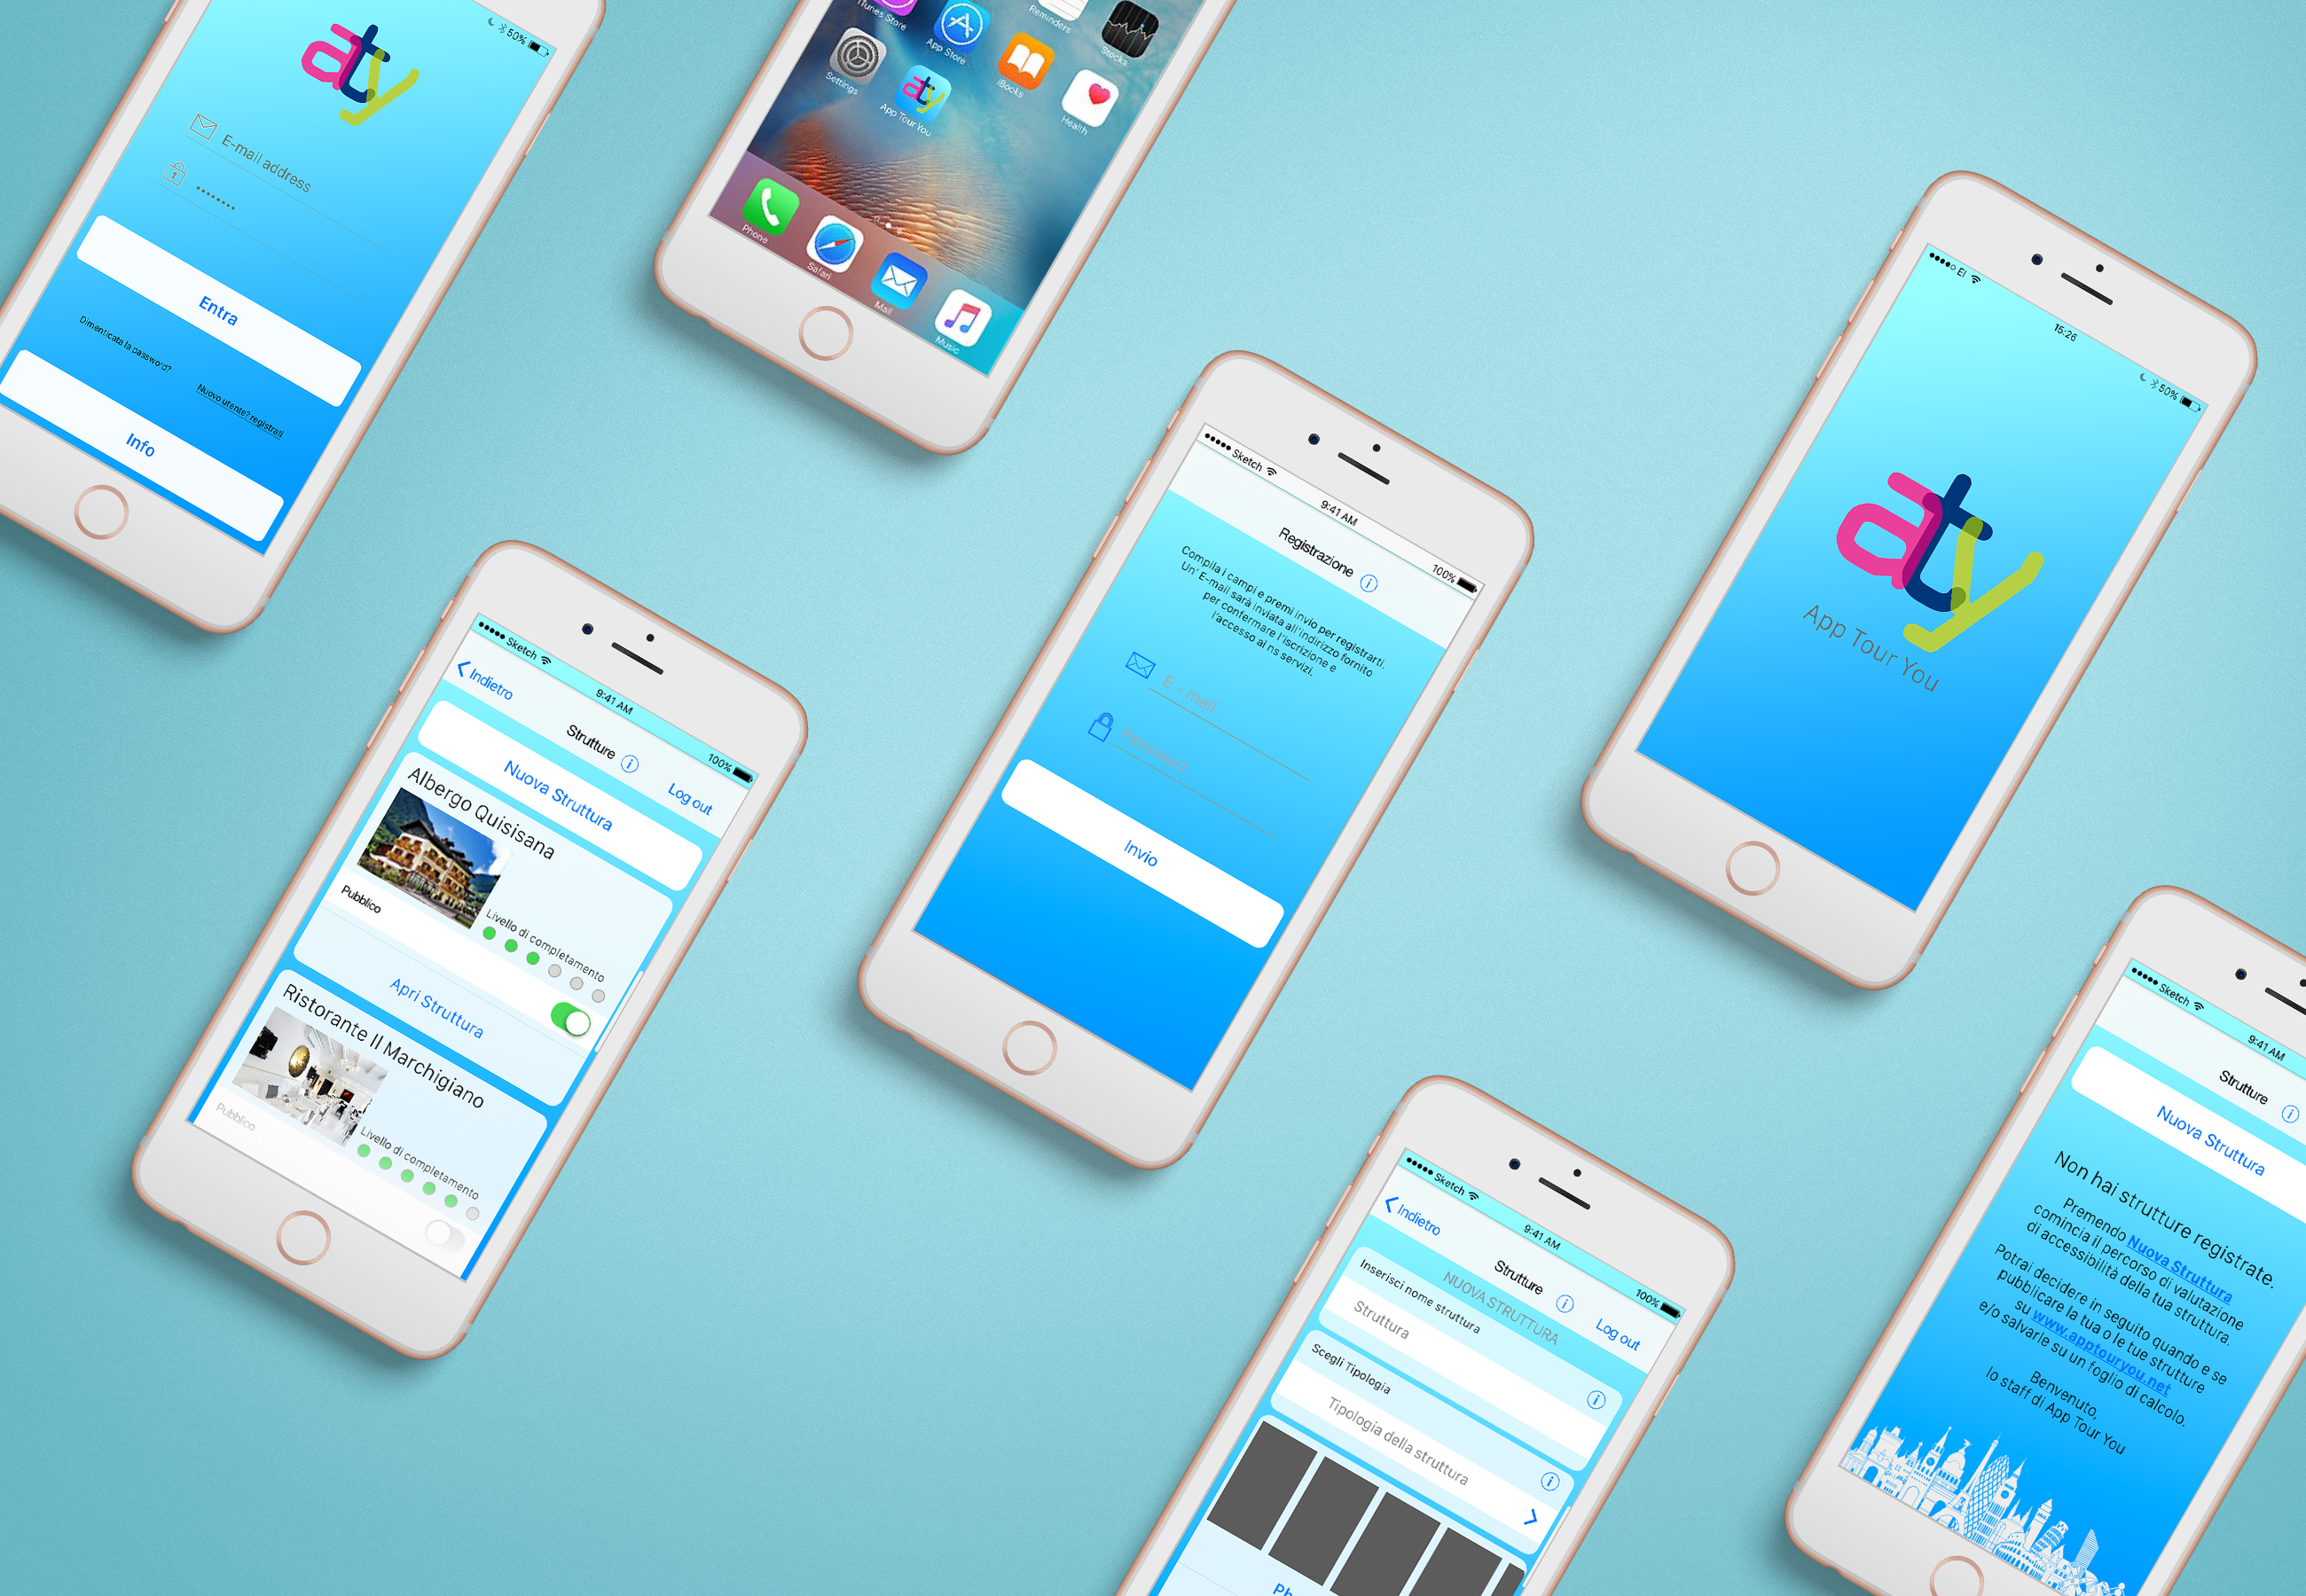 Mockup contenente diversi smartphone con le varie schermate dell'app sviluppata per il progetto App Tour You.